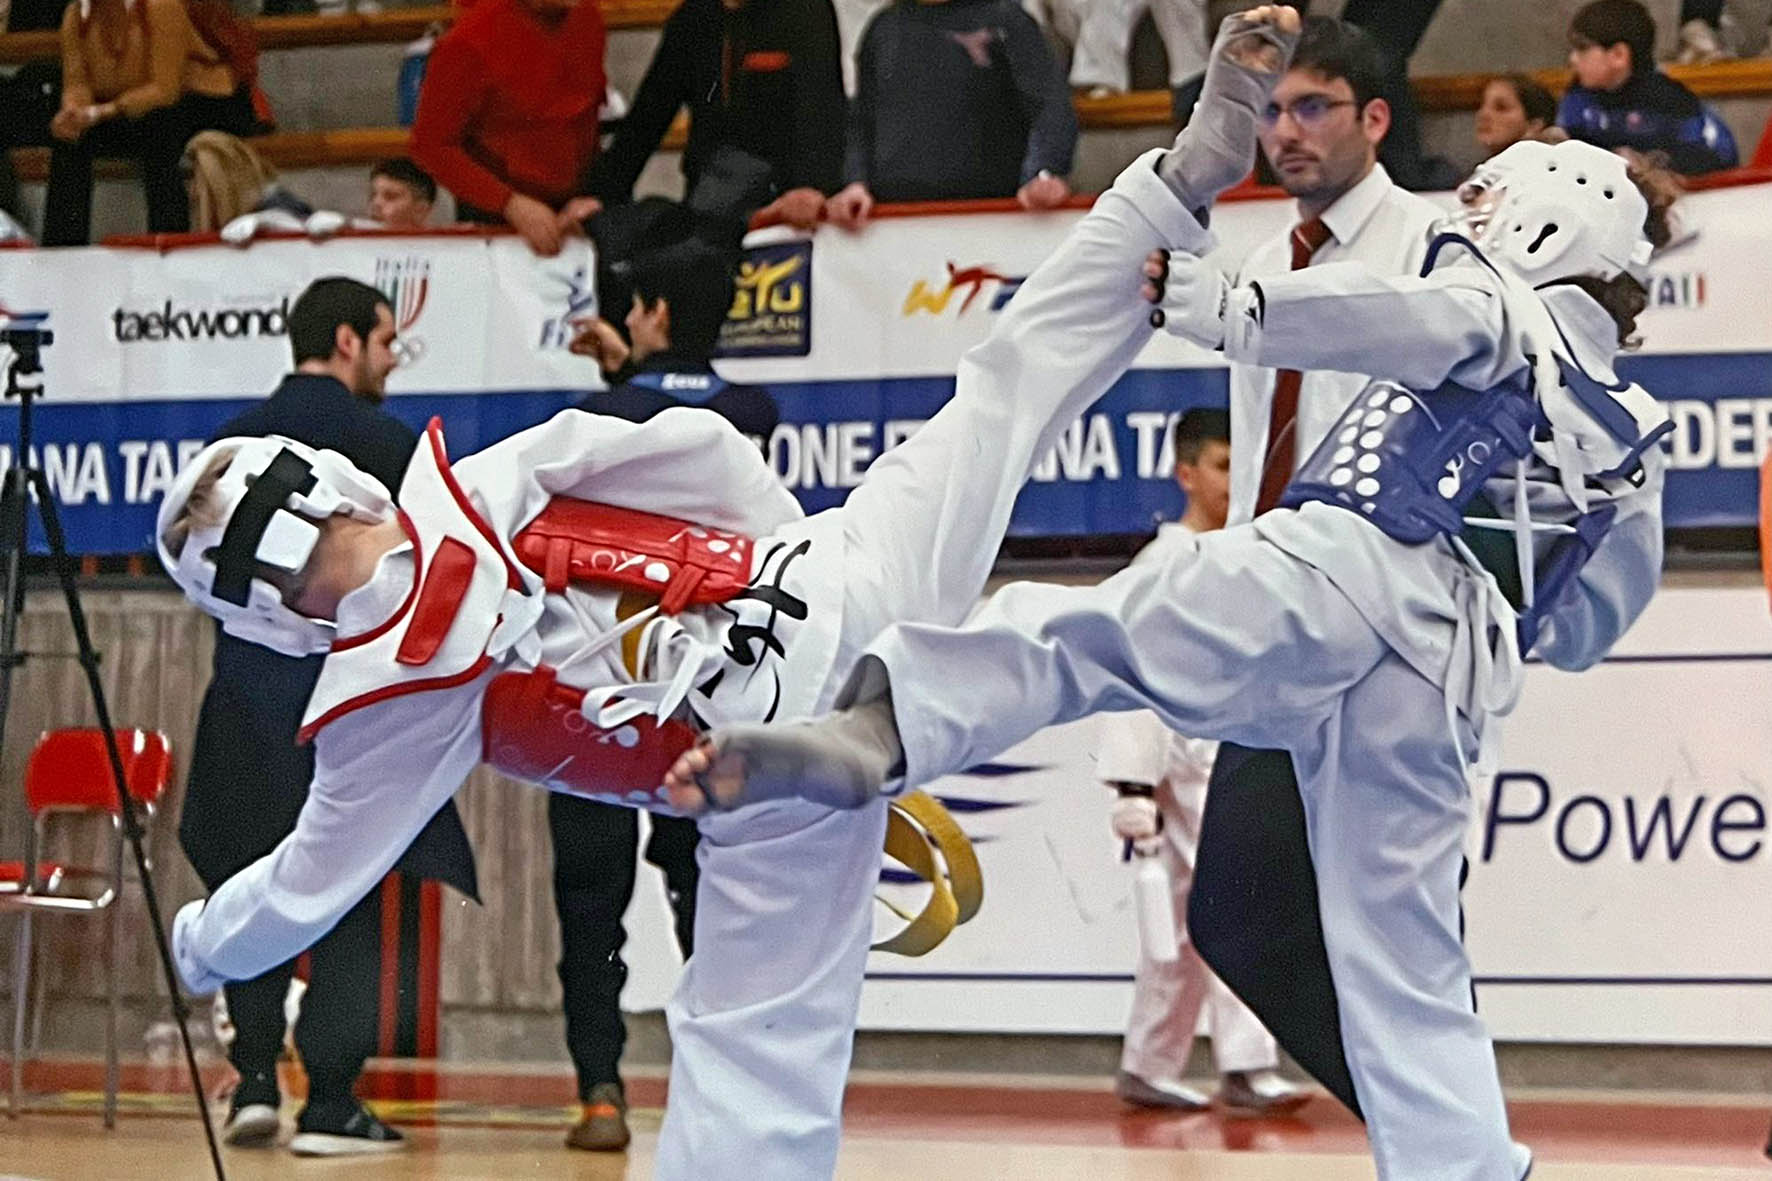 Il Centro Taekwondo Arezzo trionfa al Campionato Regionale Toscano